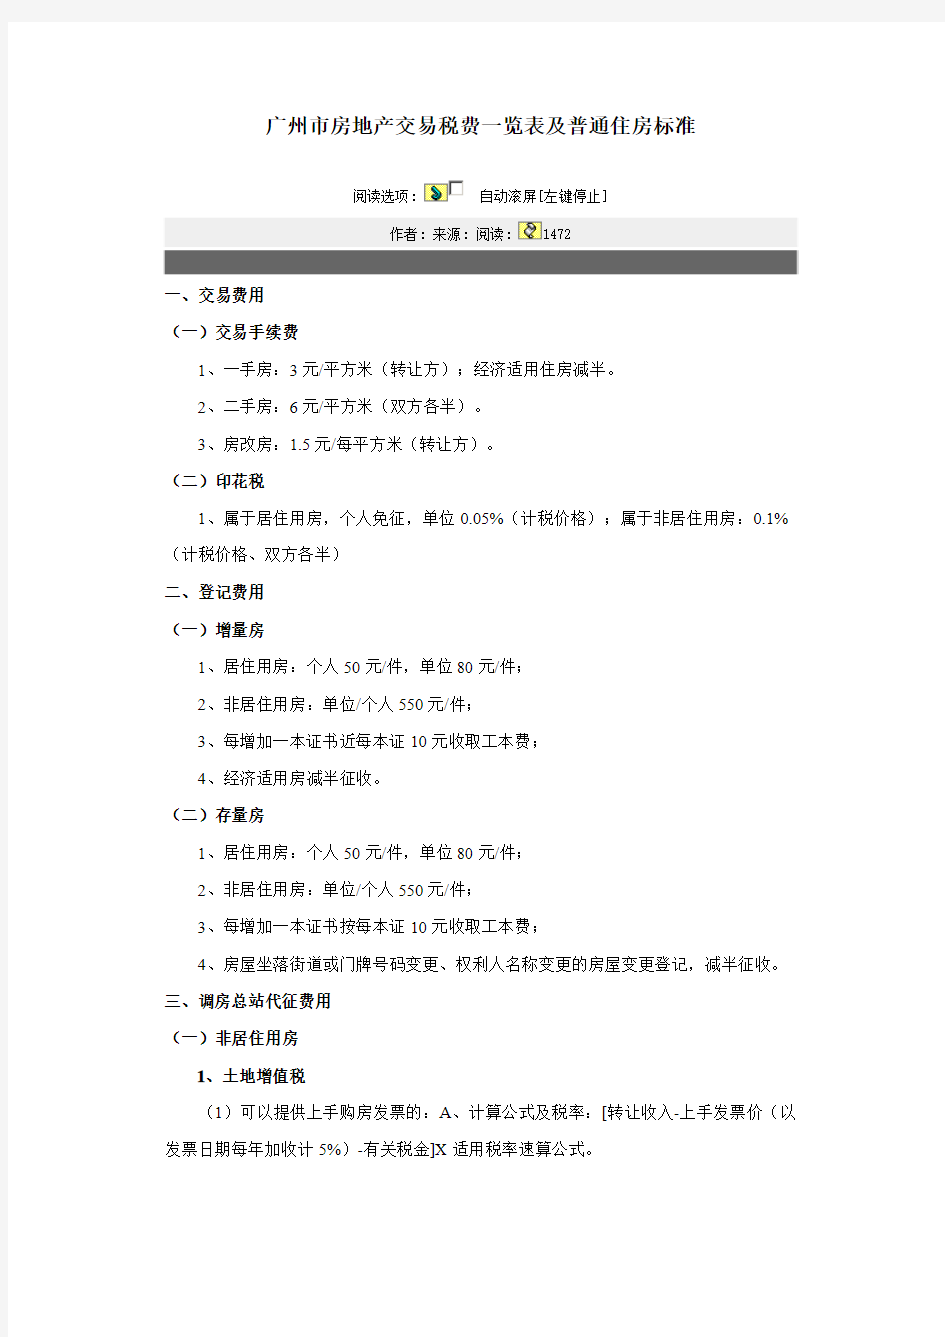 广州市房地产交易税费一览表及普通住房标准(1)